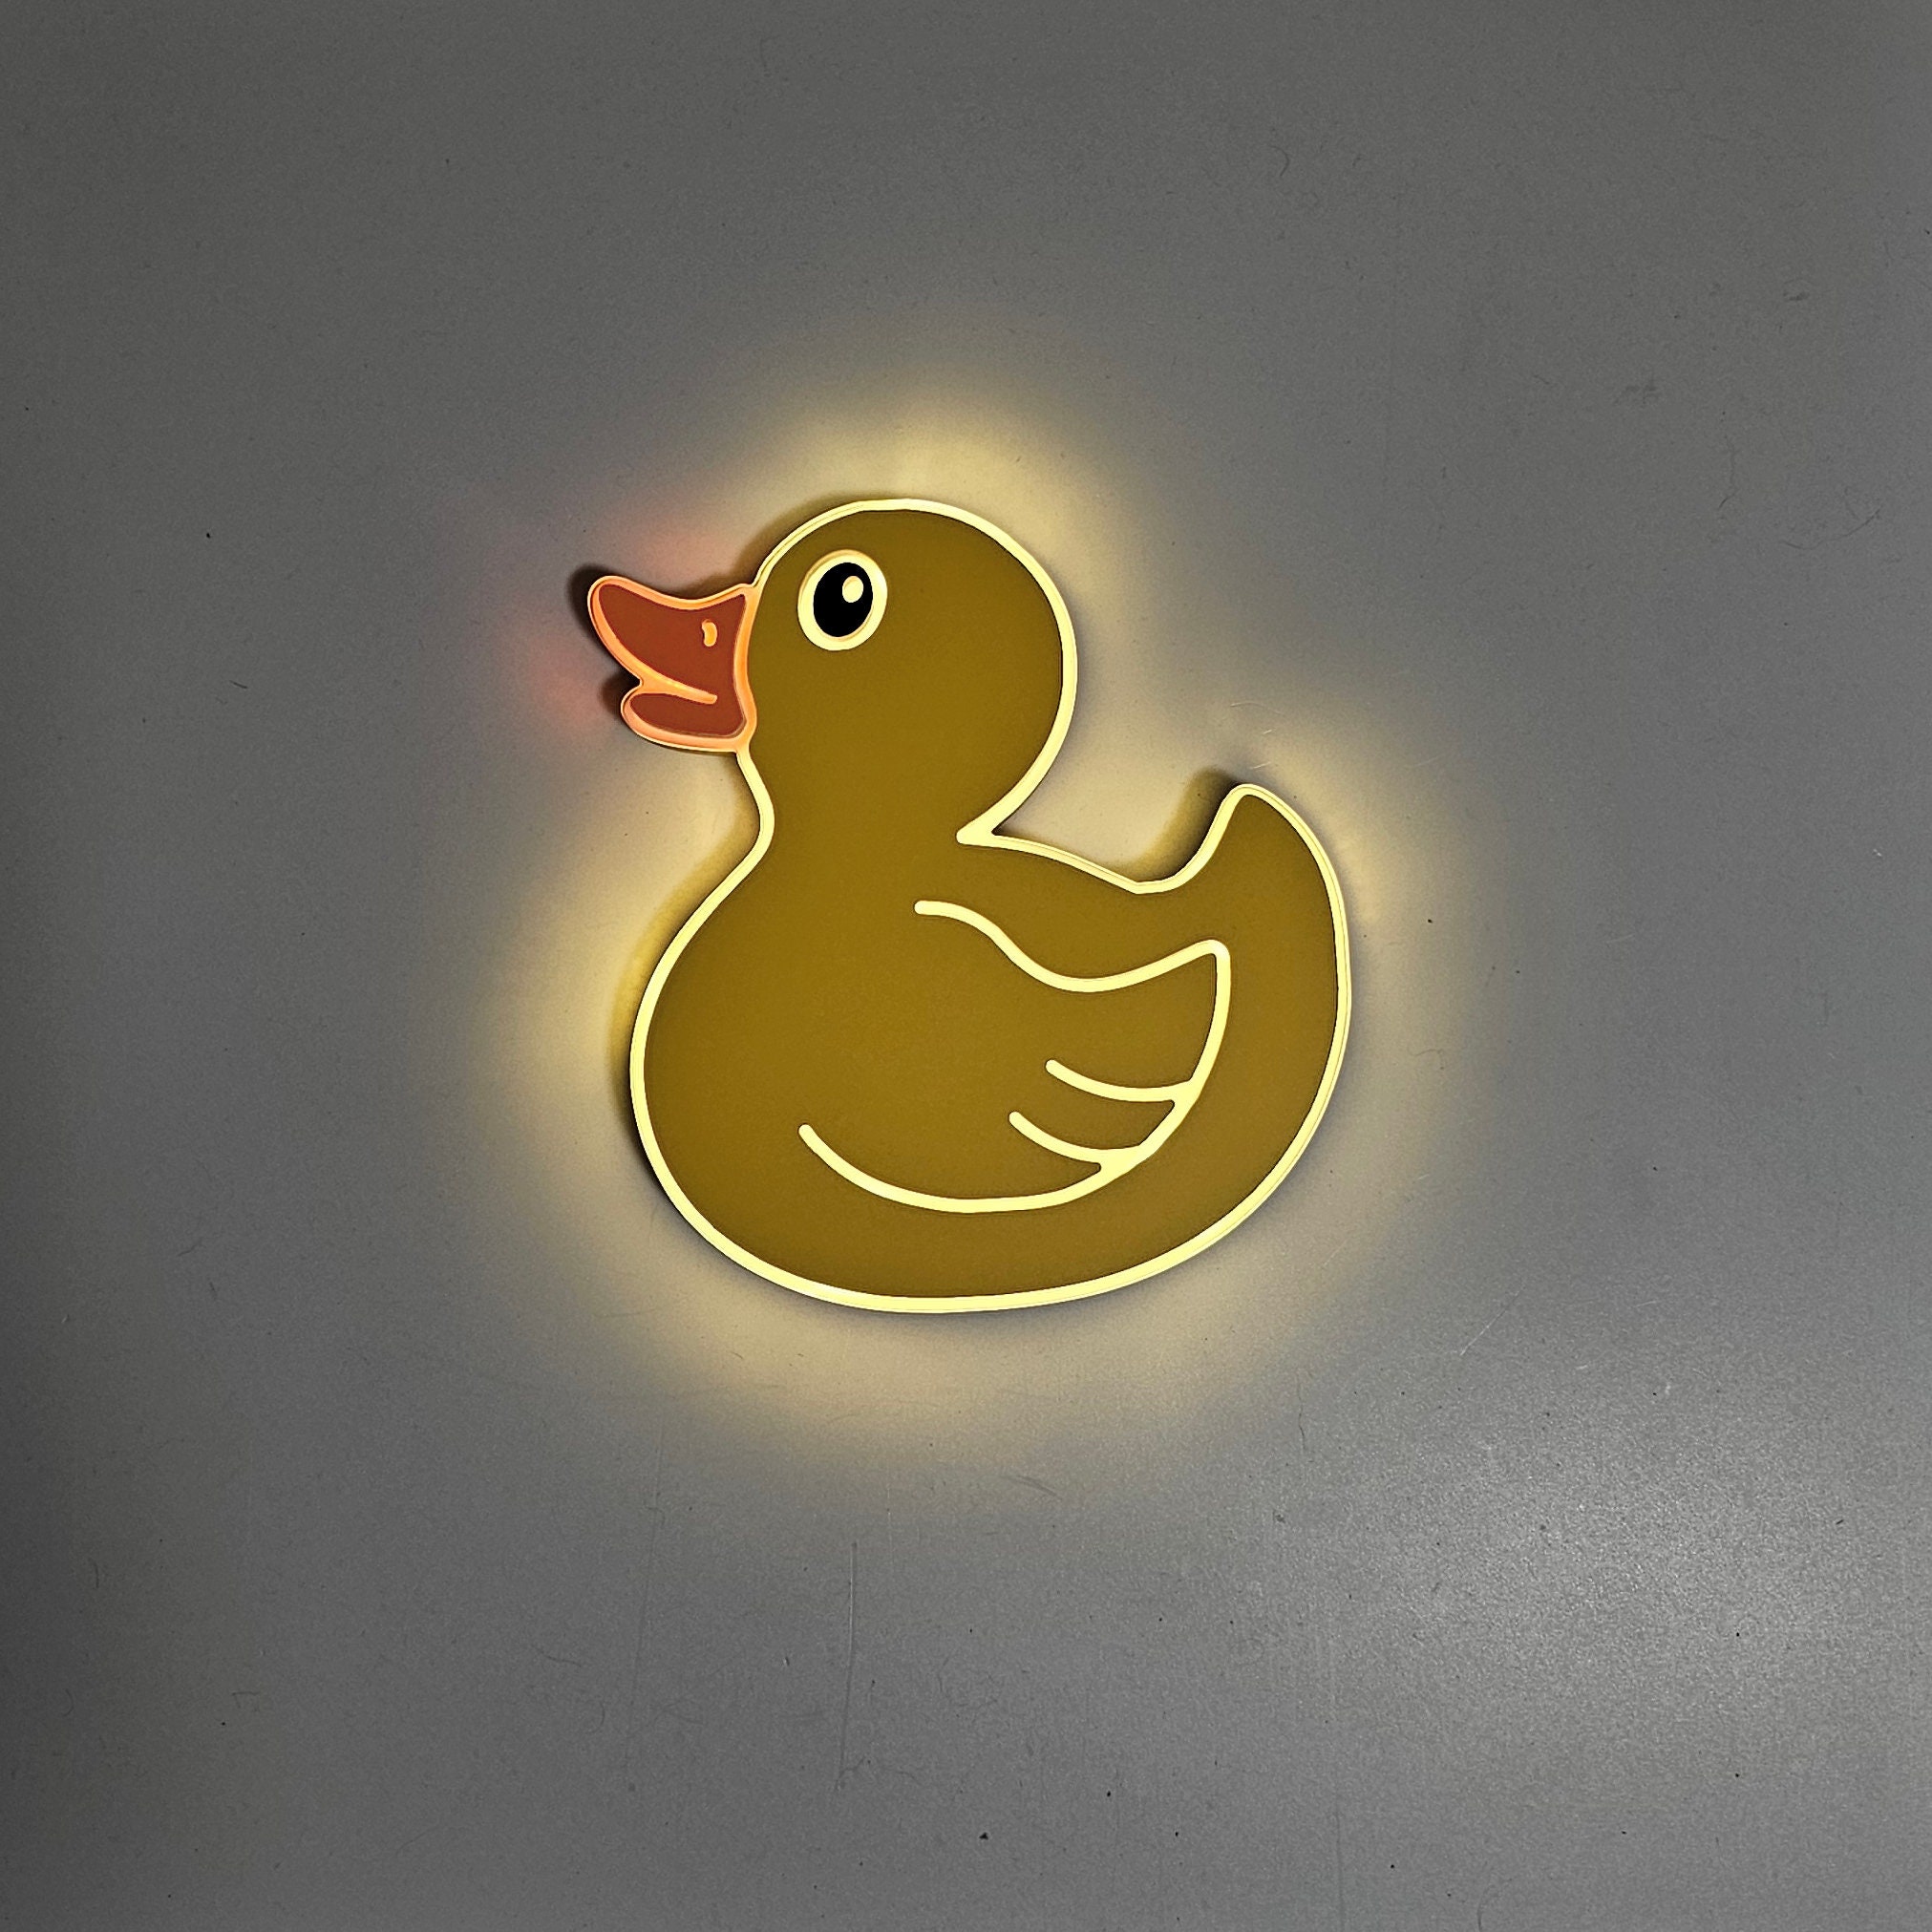 10711 - LED Rubber Ducky Night Light - Meridian Lighting